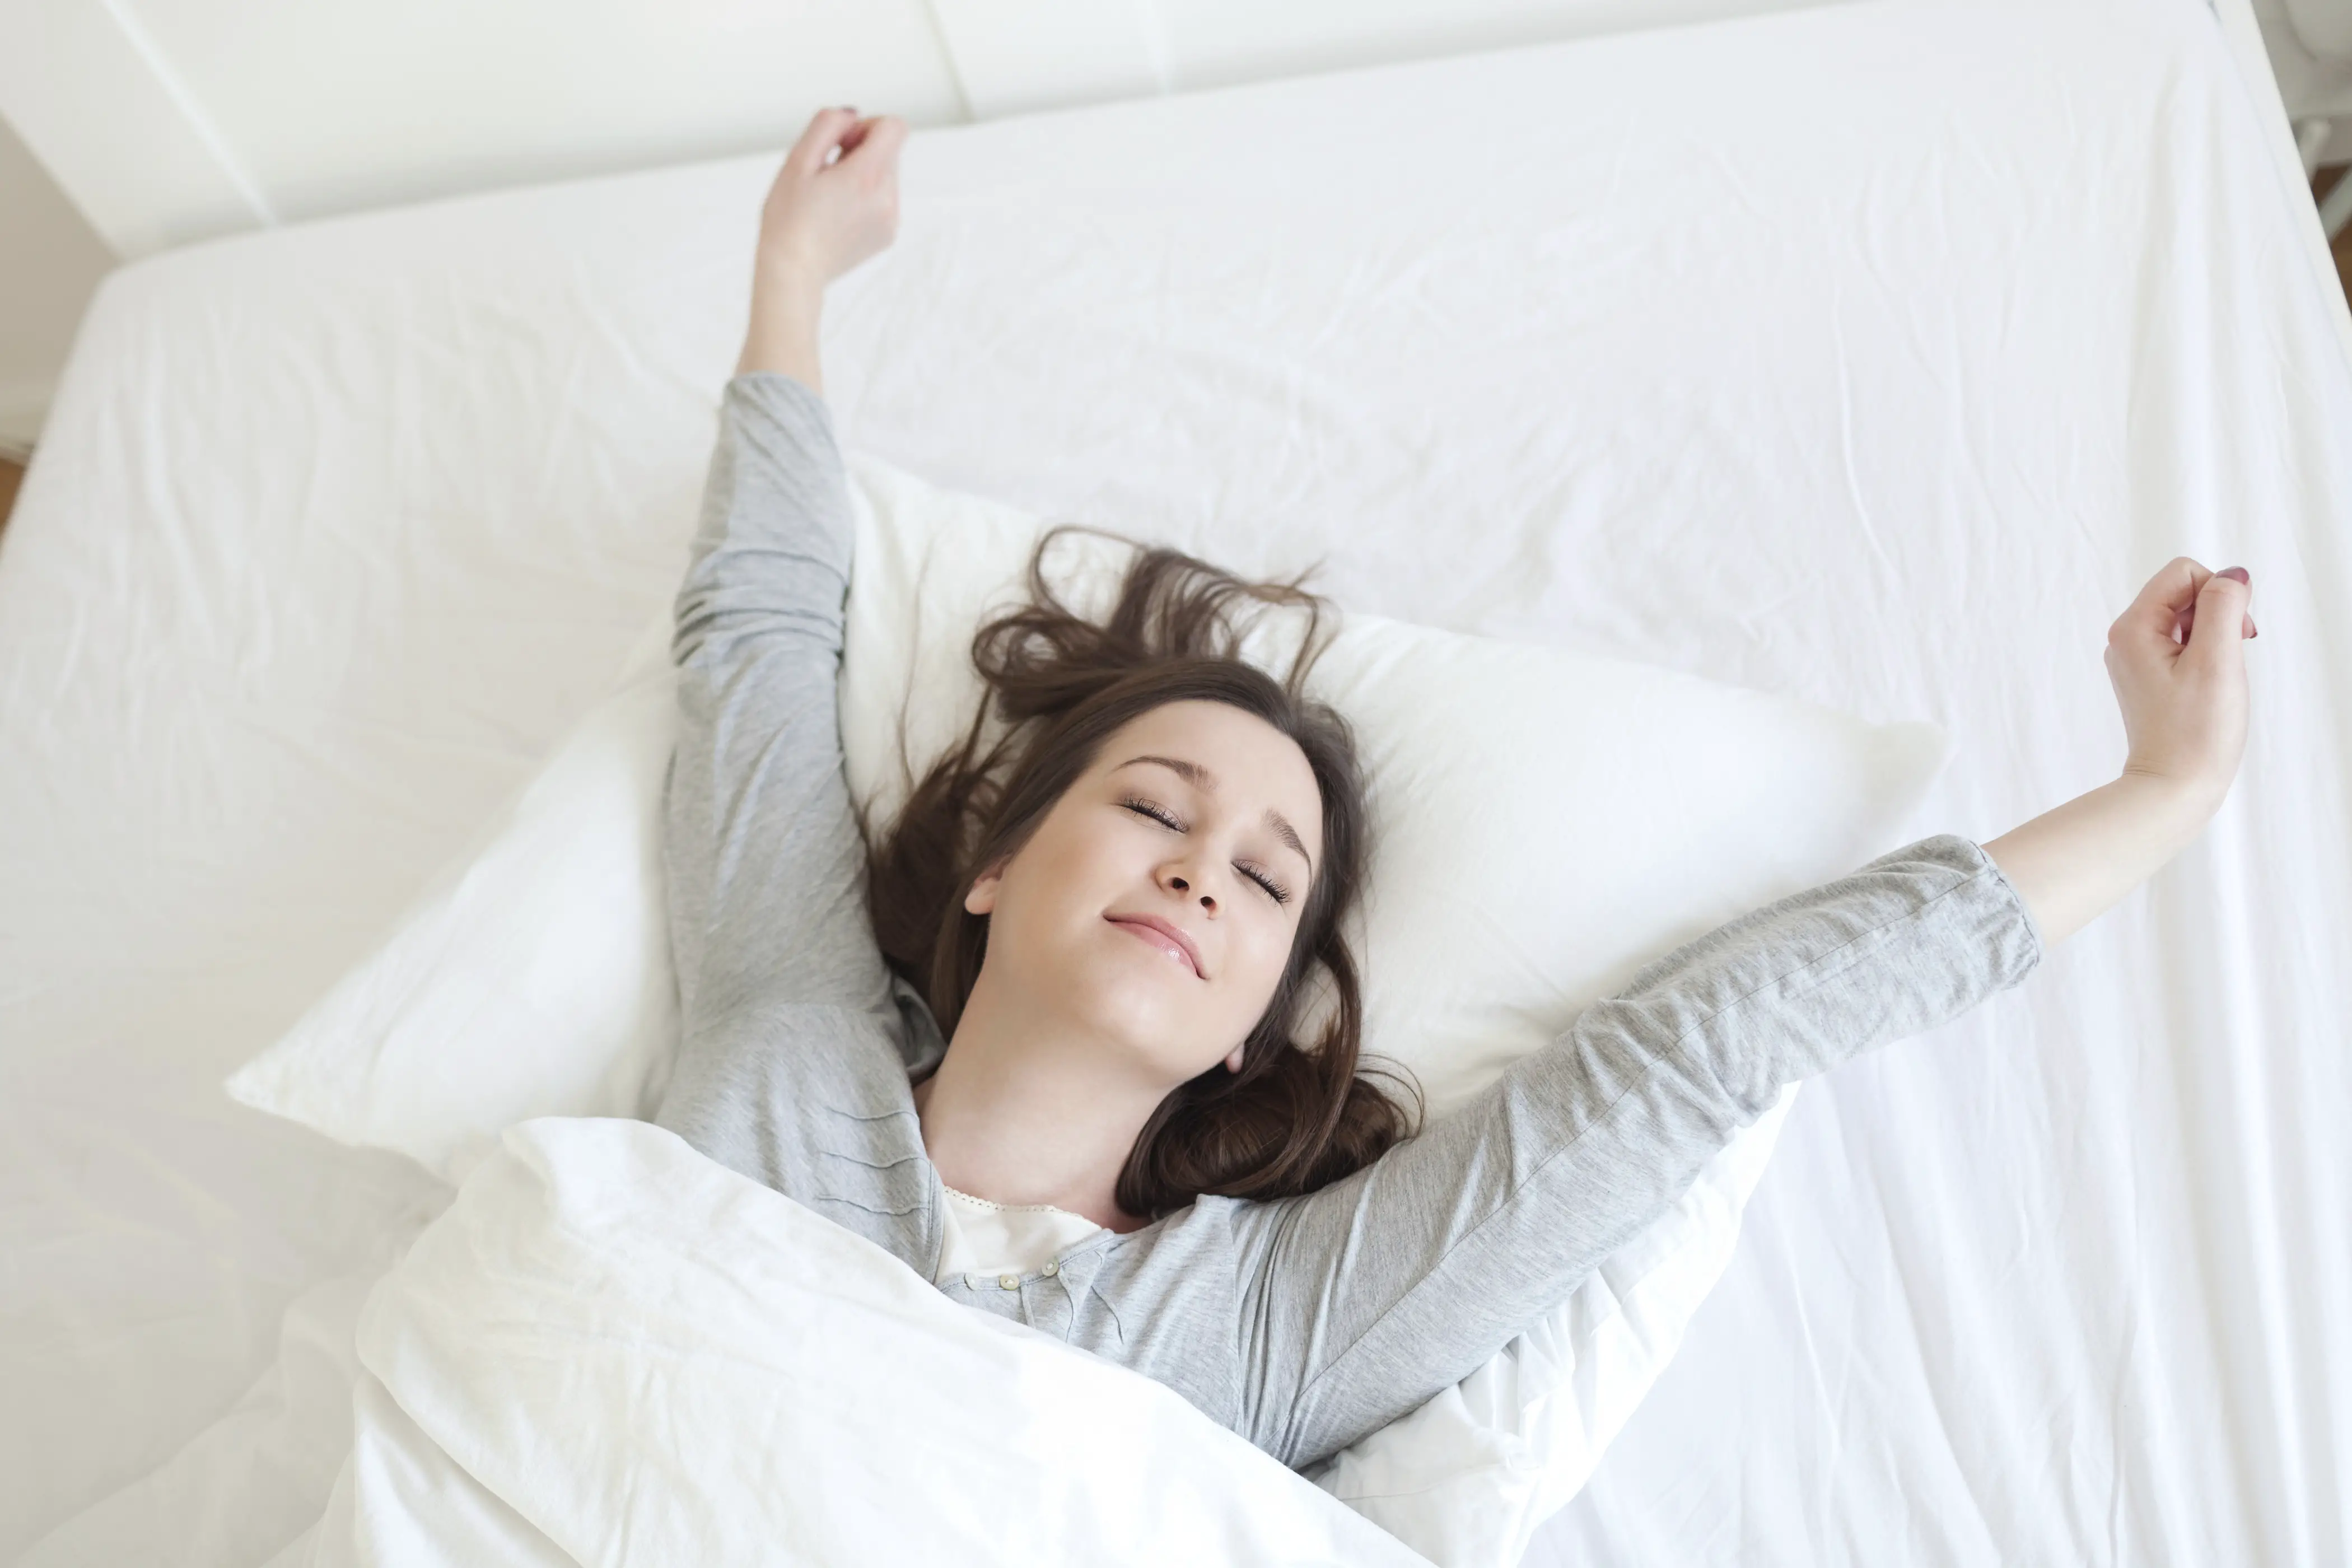 sleep comfort international mattress reviews